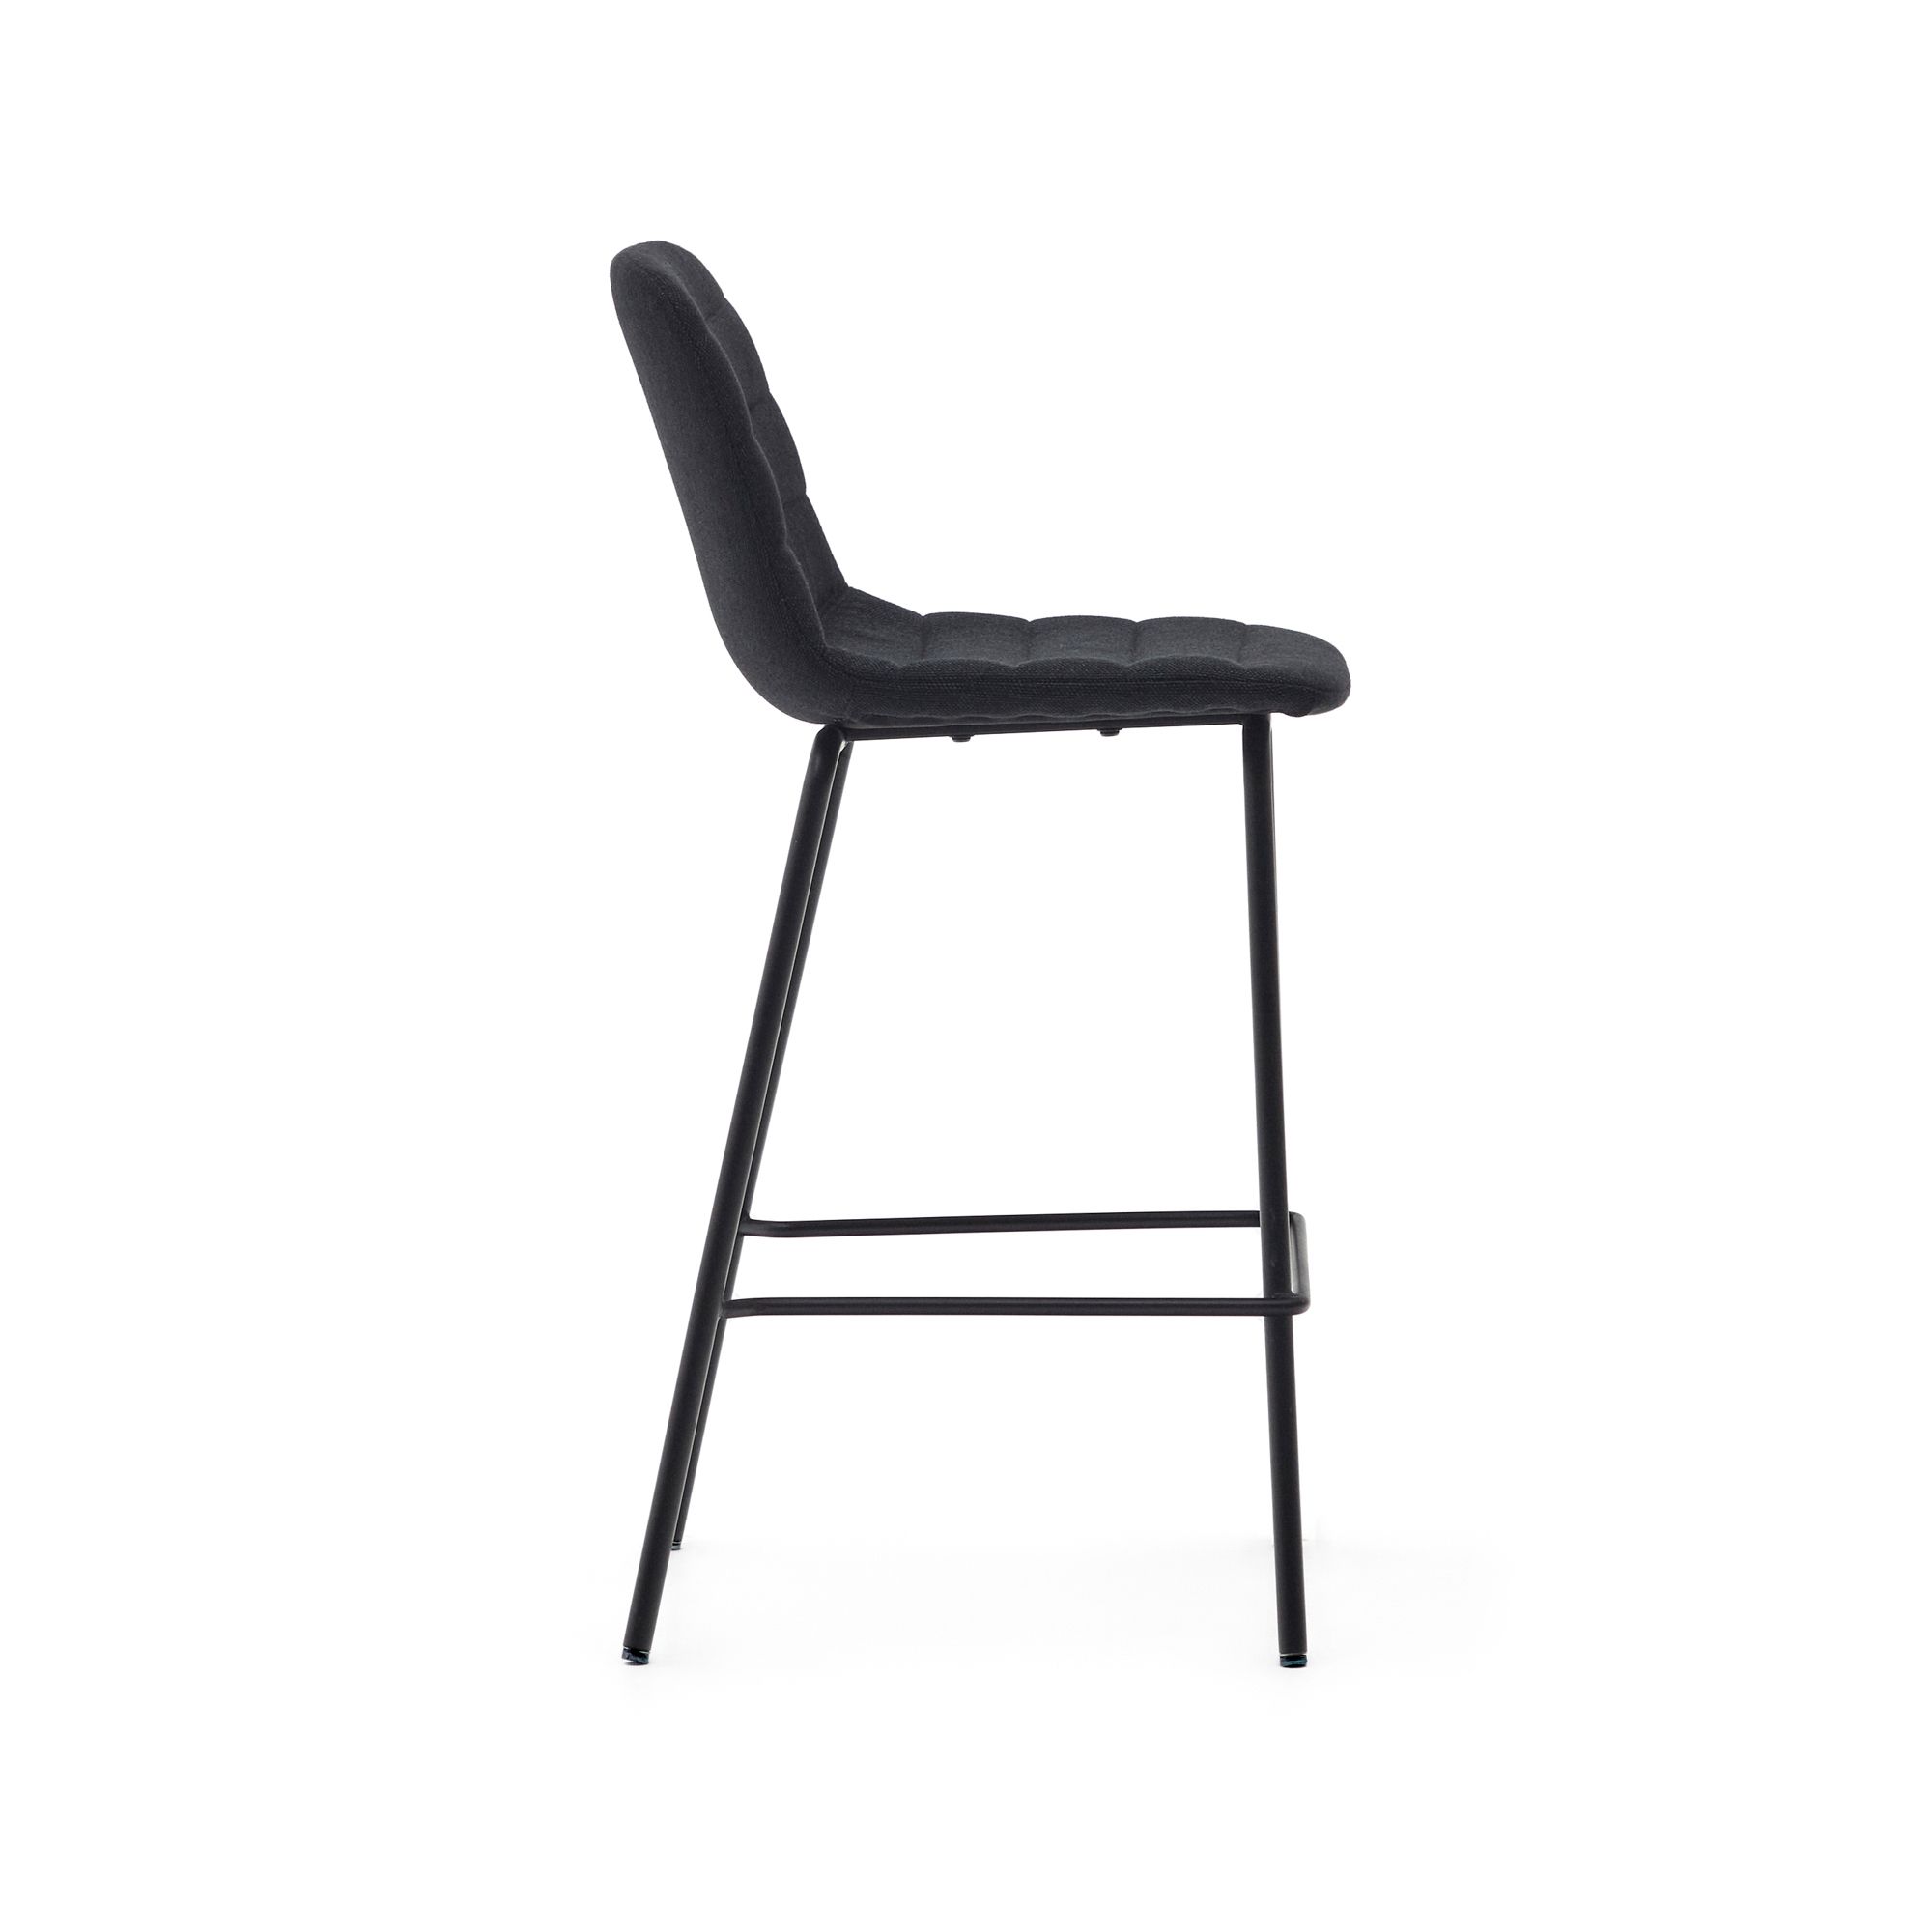 Полубарный стул Zunilda из черной синели и стали с матовой черной отделкой, высота сиденья 65 см. Zunilda